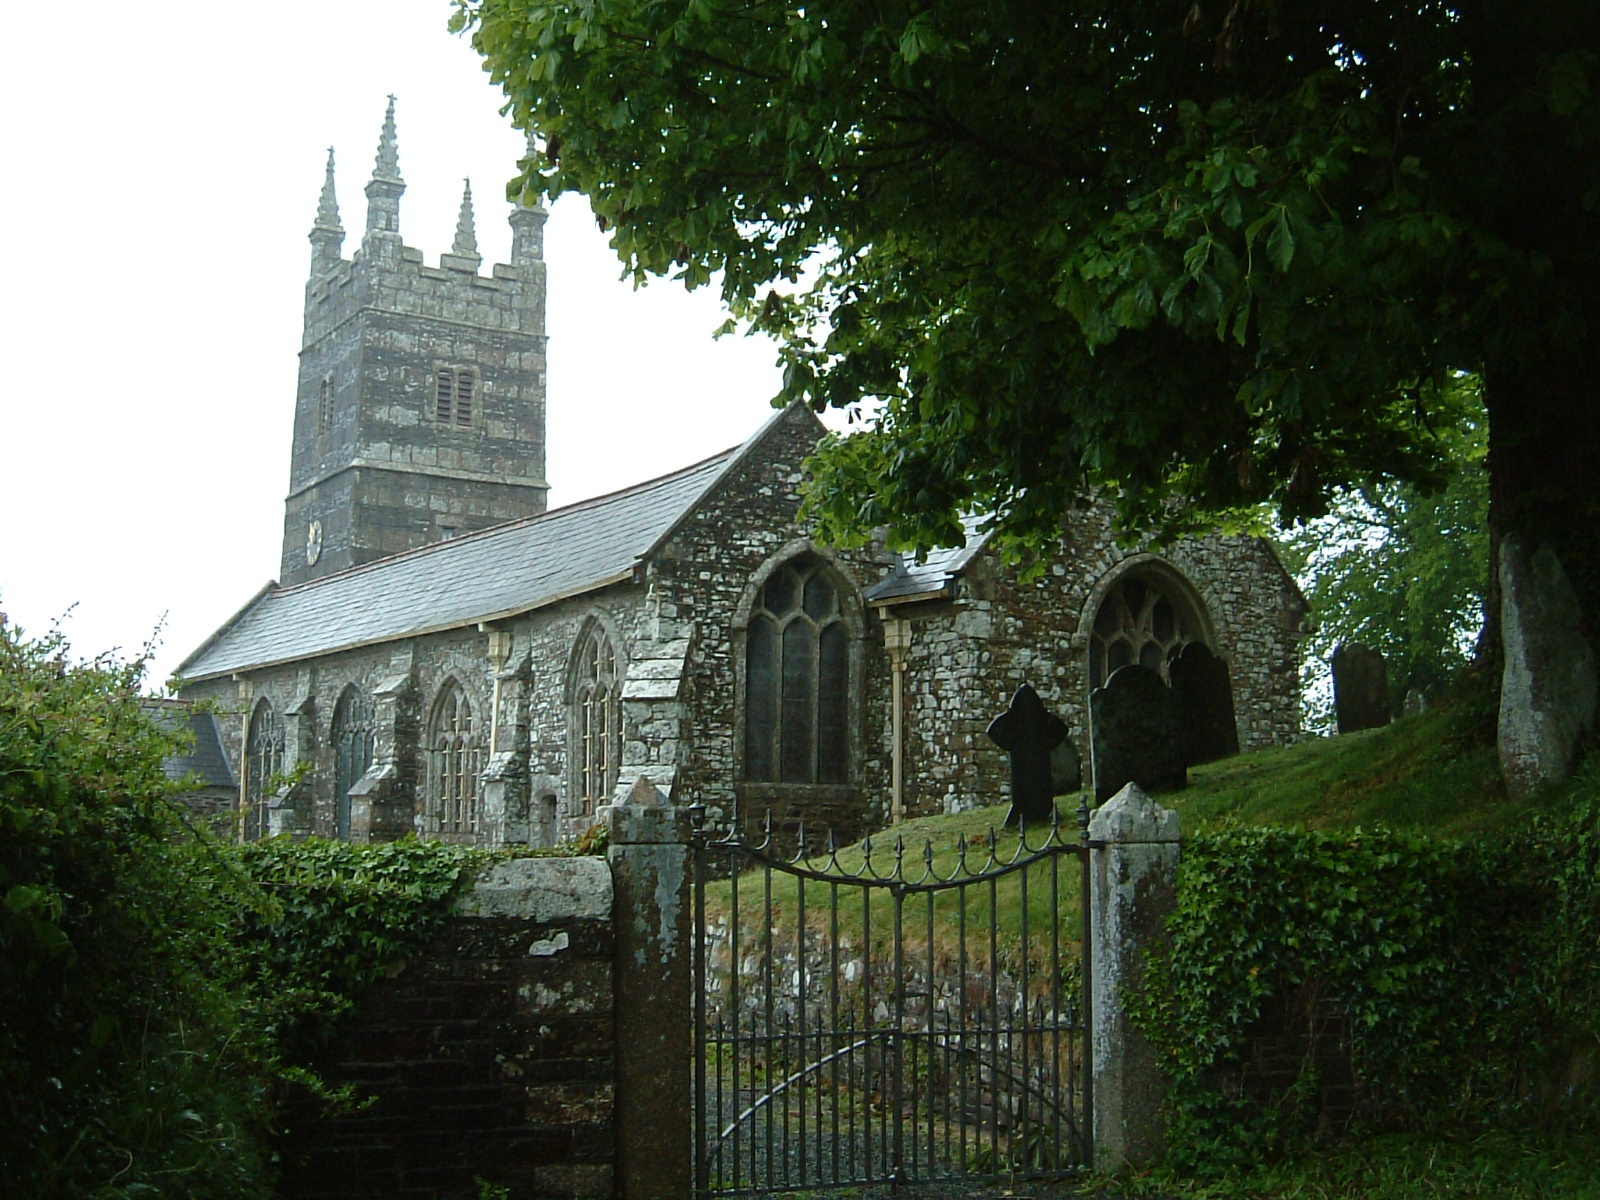 Stowford Church